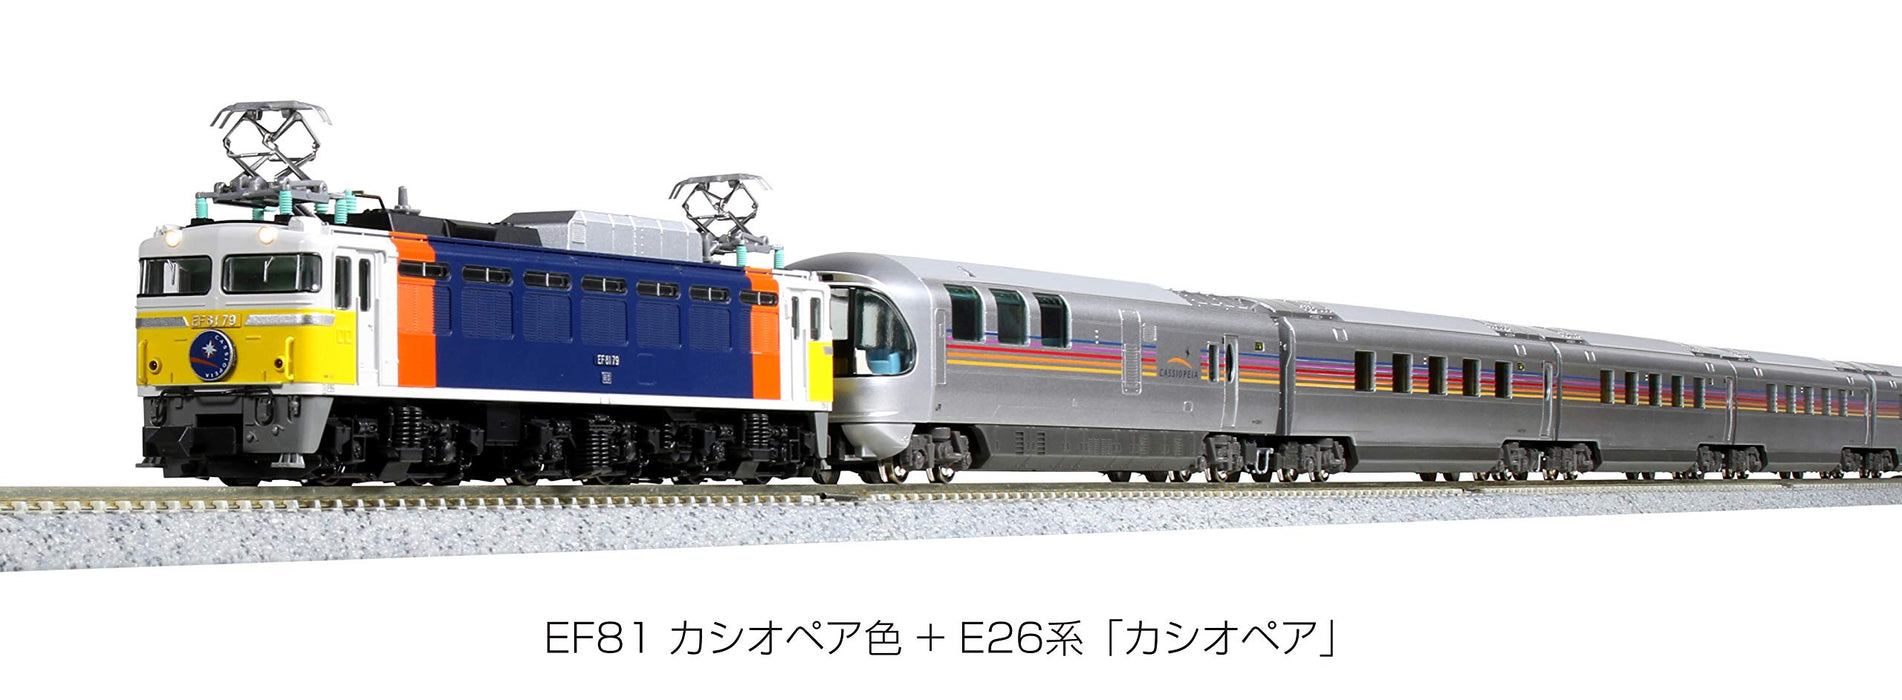 Modèle ferroviaire de locomotive électrique Kato N Gauge 3066-A en couleur Cassiopée